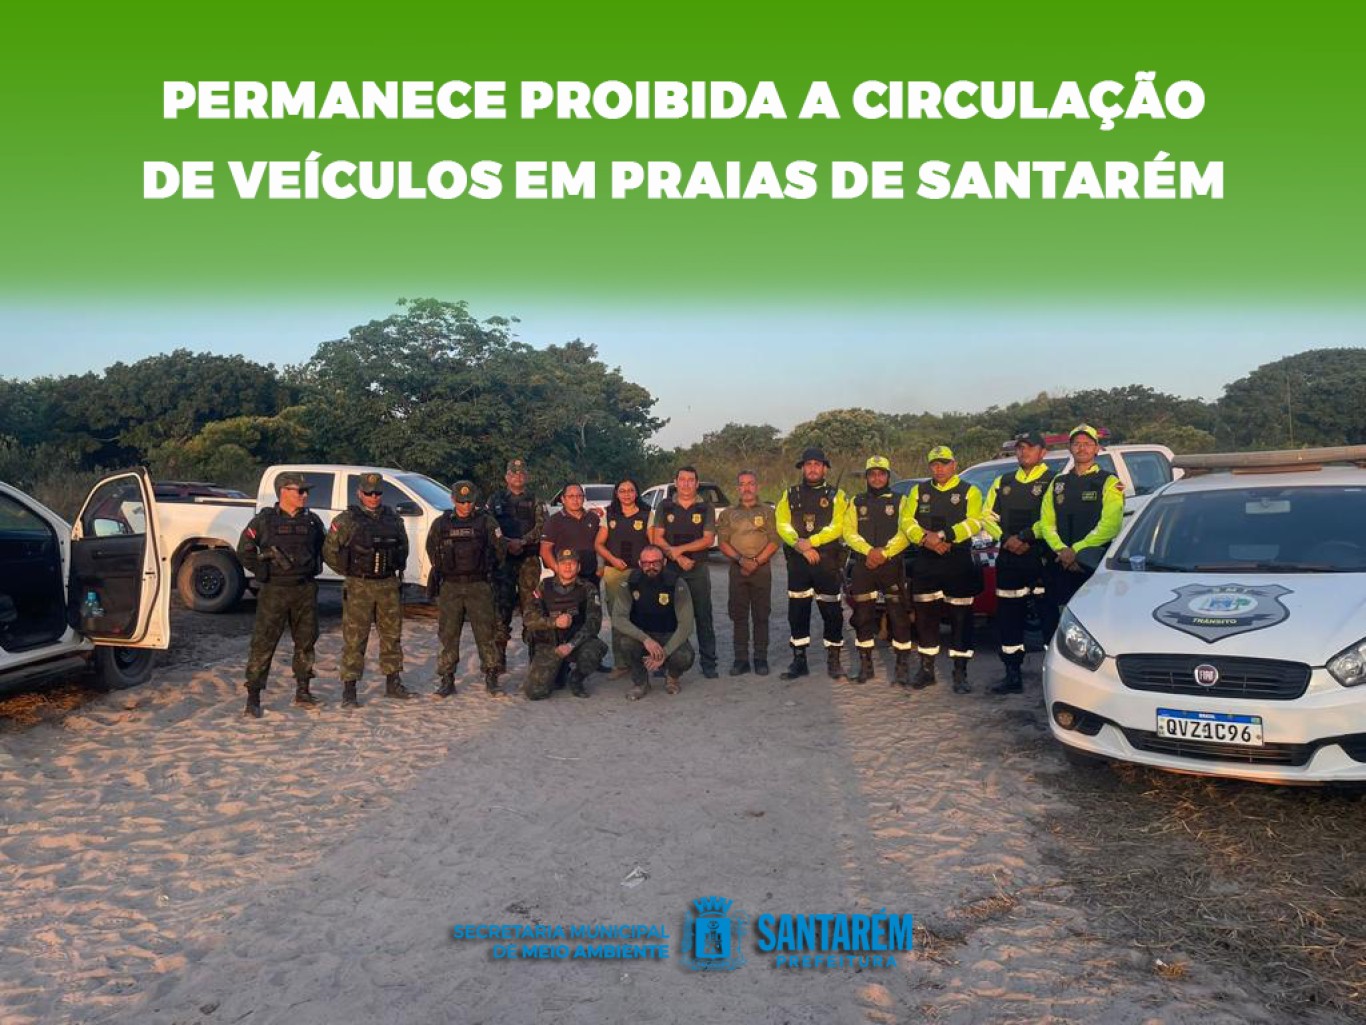 Permanece proibida a circulação de veículos em praias de Santarém